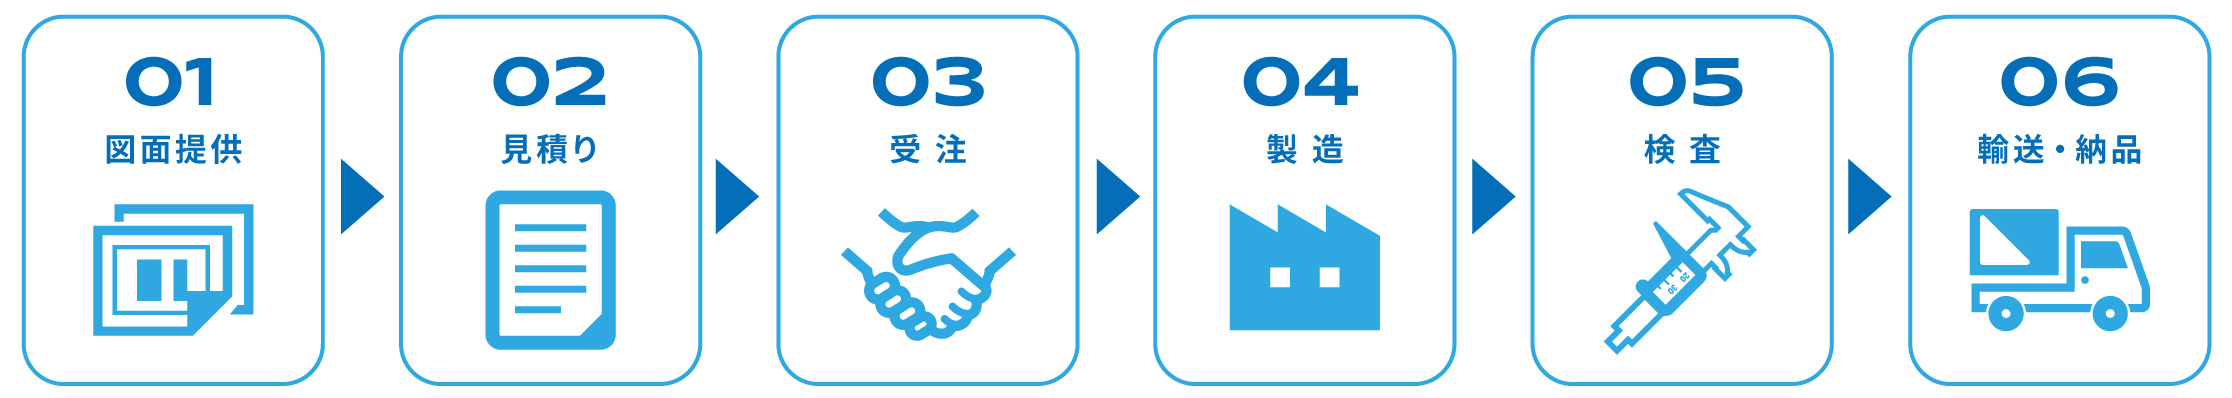 01図面提供→02見積り→03受注→04製造→05検査→06輸送・納品